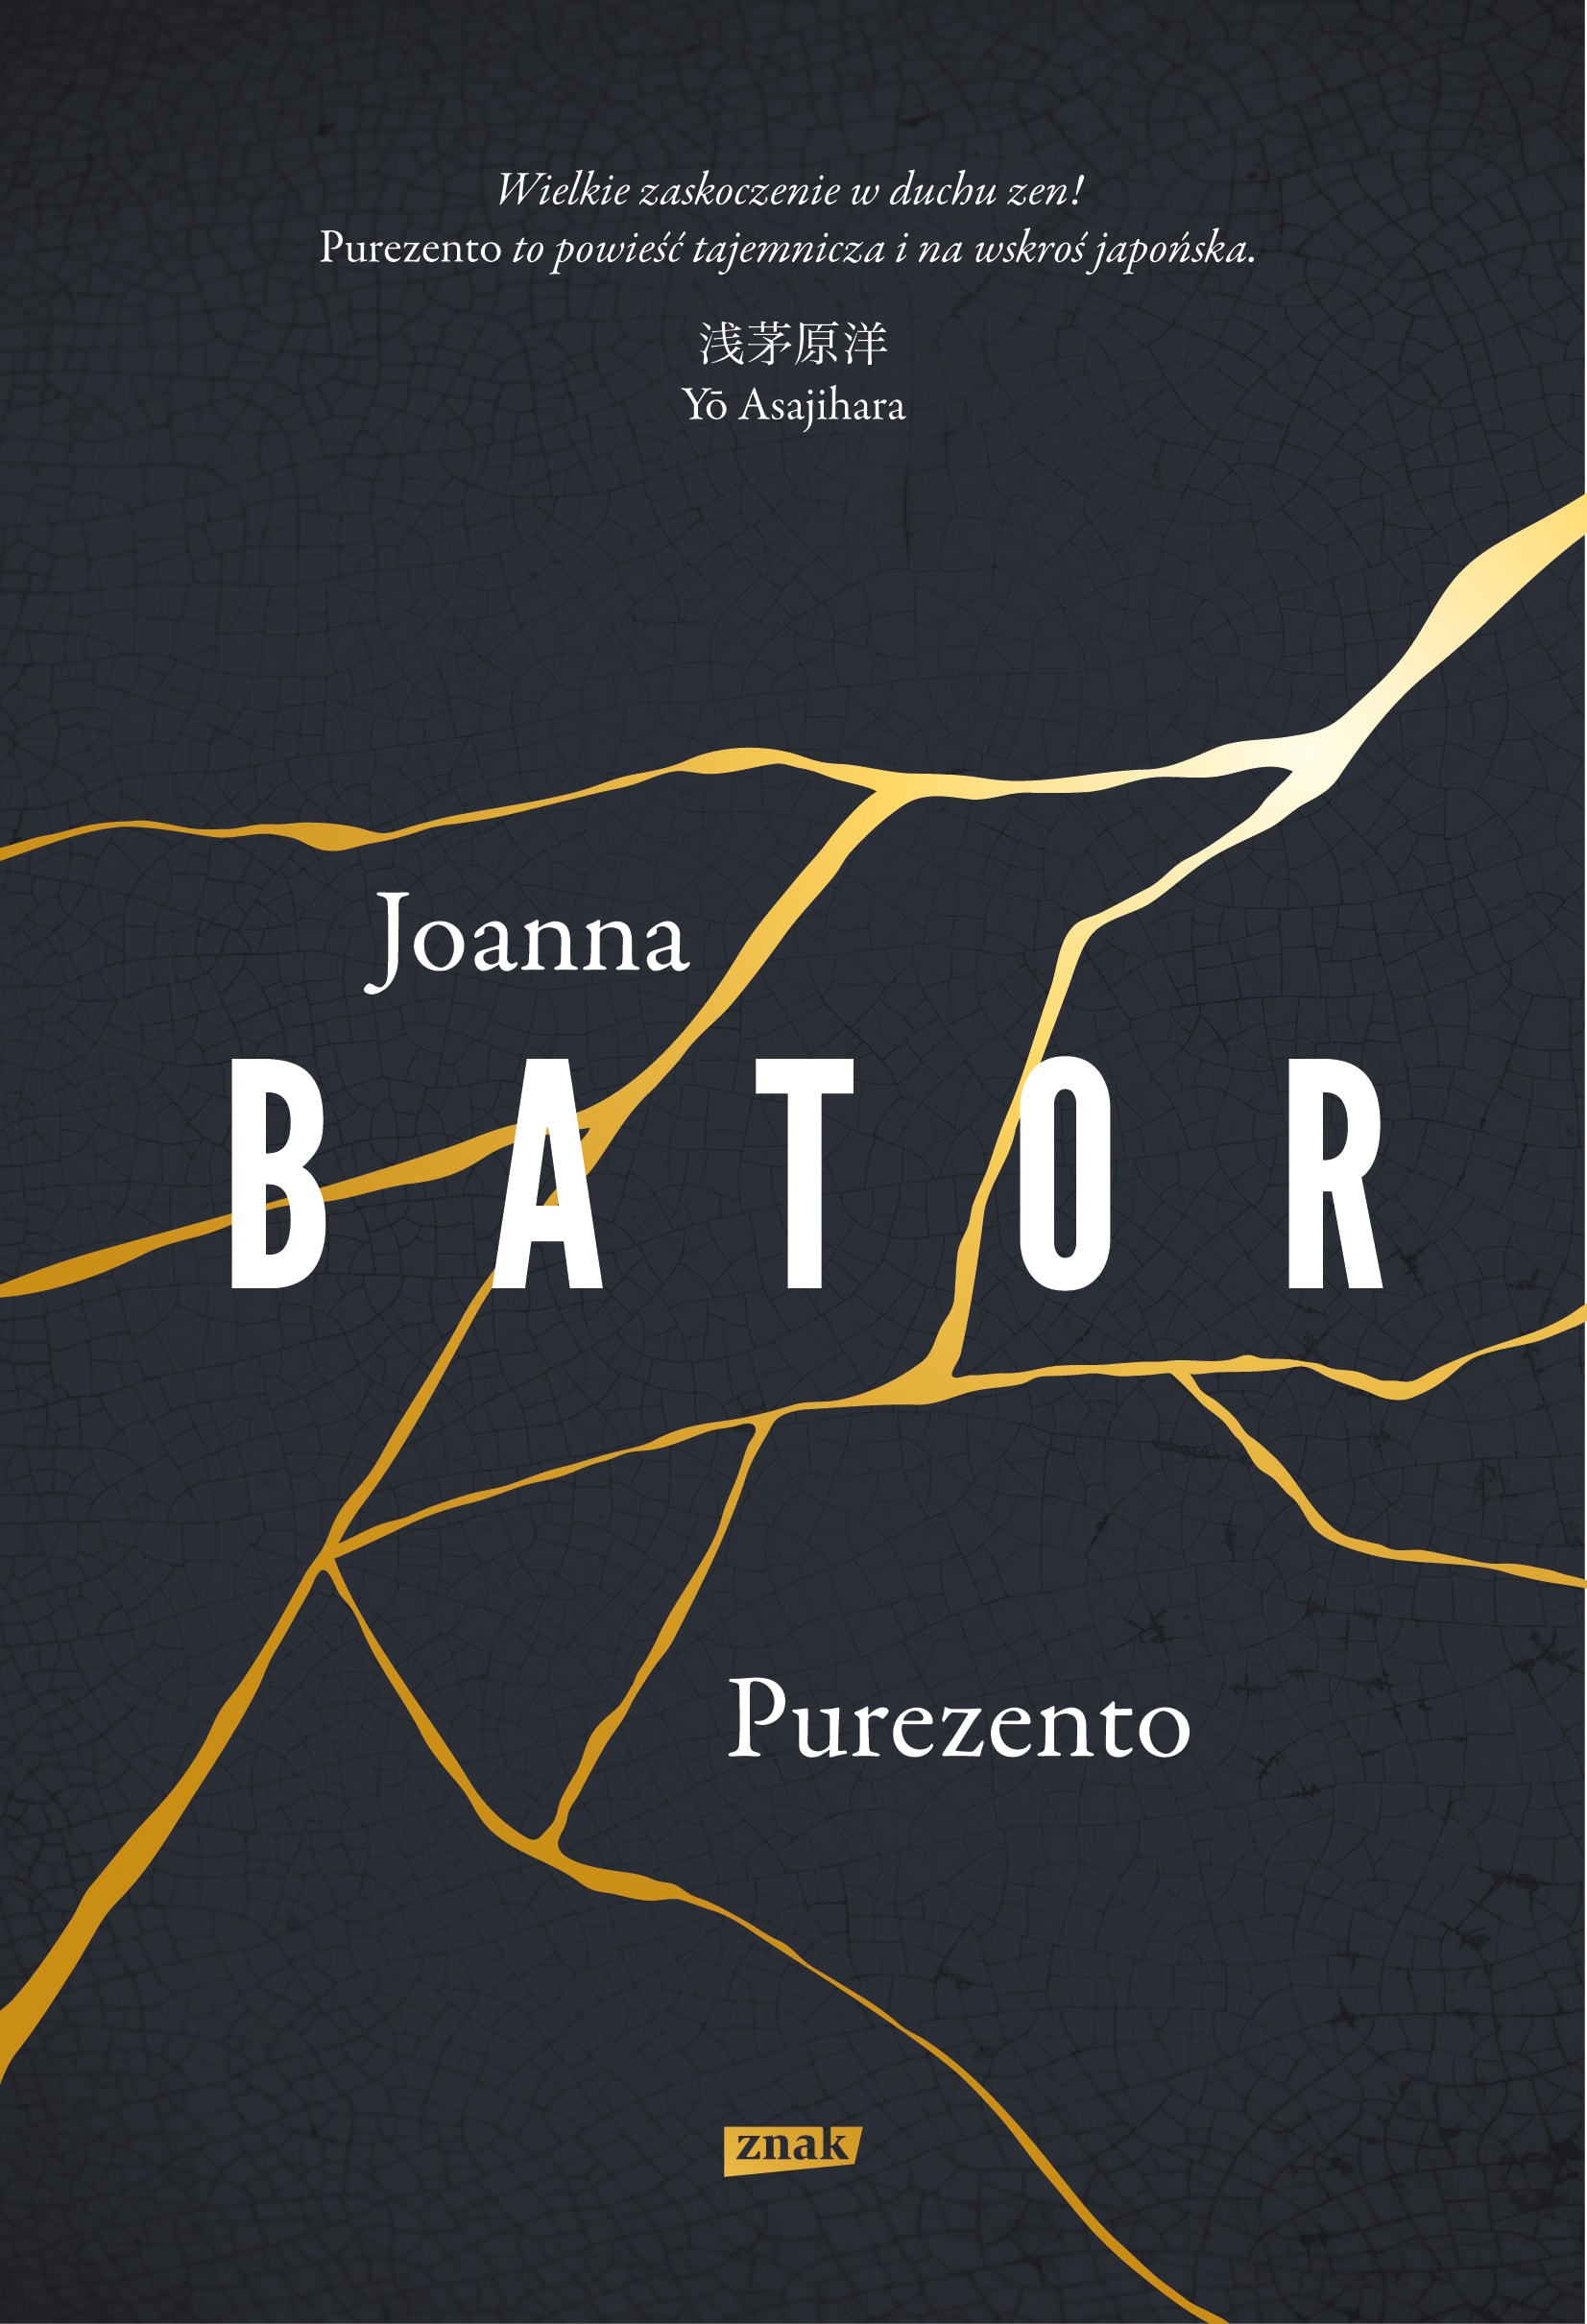 Joanna Bator „Purezento”(źródło: materiały prasowe wydawcy)